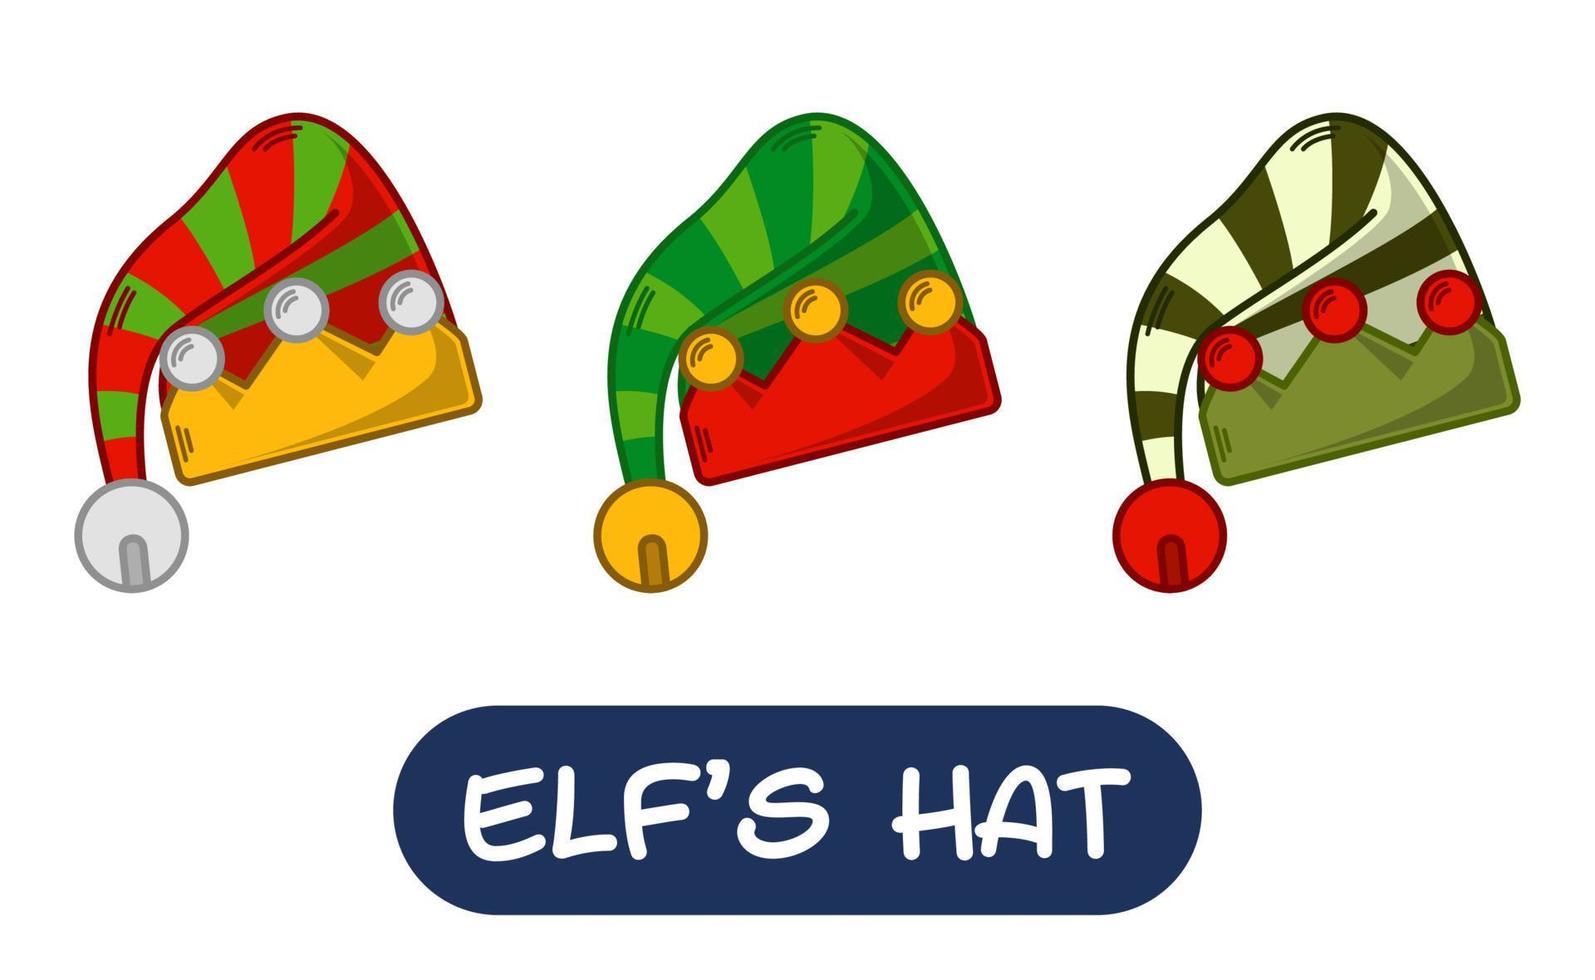 ilustração de chapéu de elfo dos desenhos animados. conjunto de cores de variação. vetor eps 10